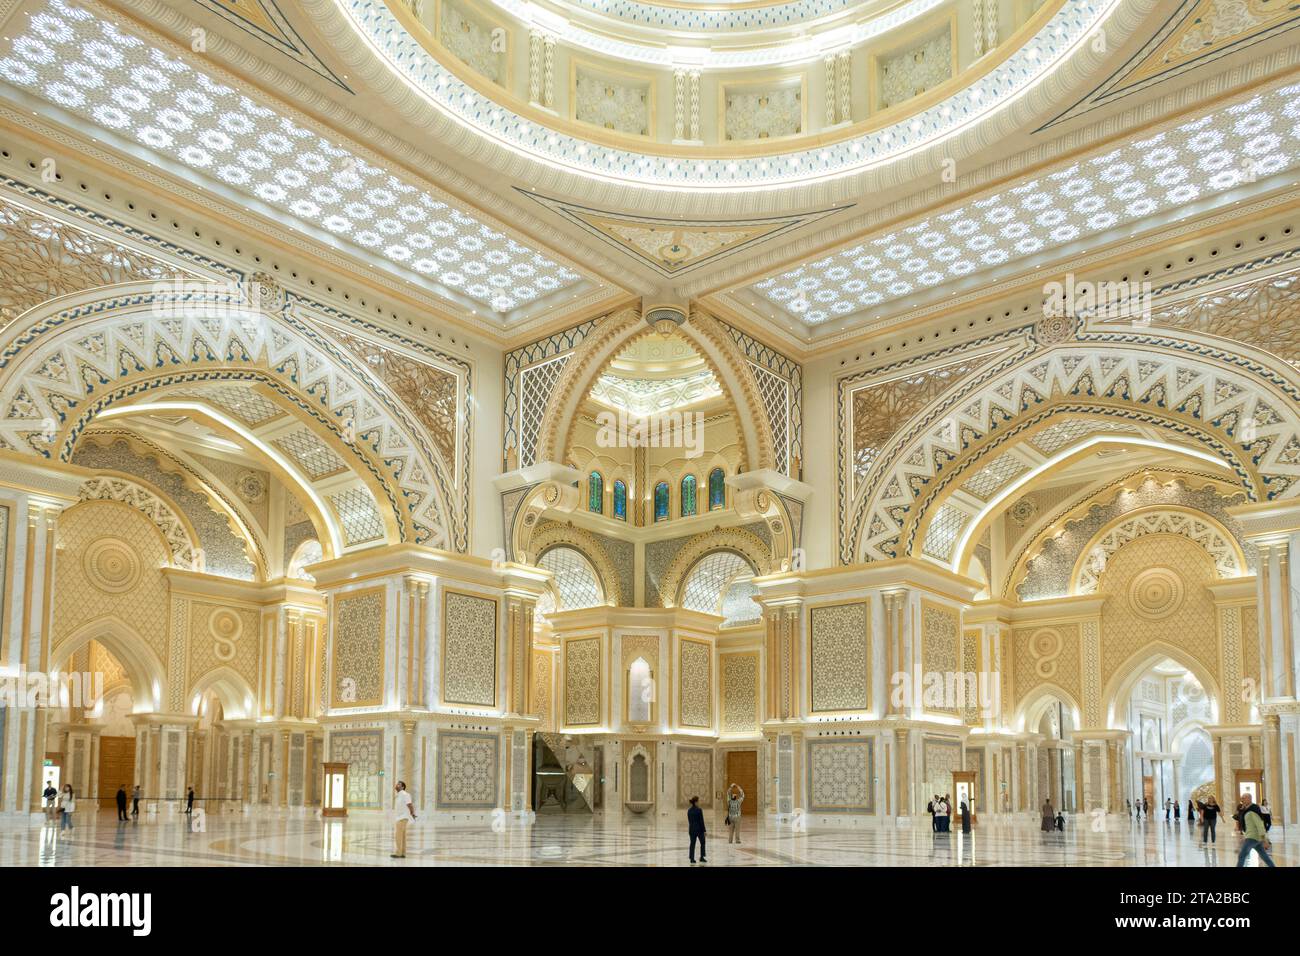 Abu Dhabi, VAE, 08.02.2020. Präsidentenpalast der Vereinigten Arabischen Emirate Qasr Al Watan, Innenansicht der großen Halle reich verzierte Wände und Decken. Stockfoto